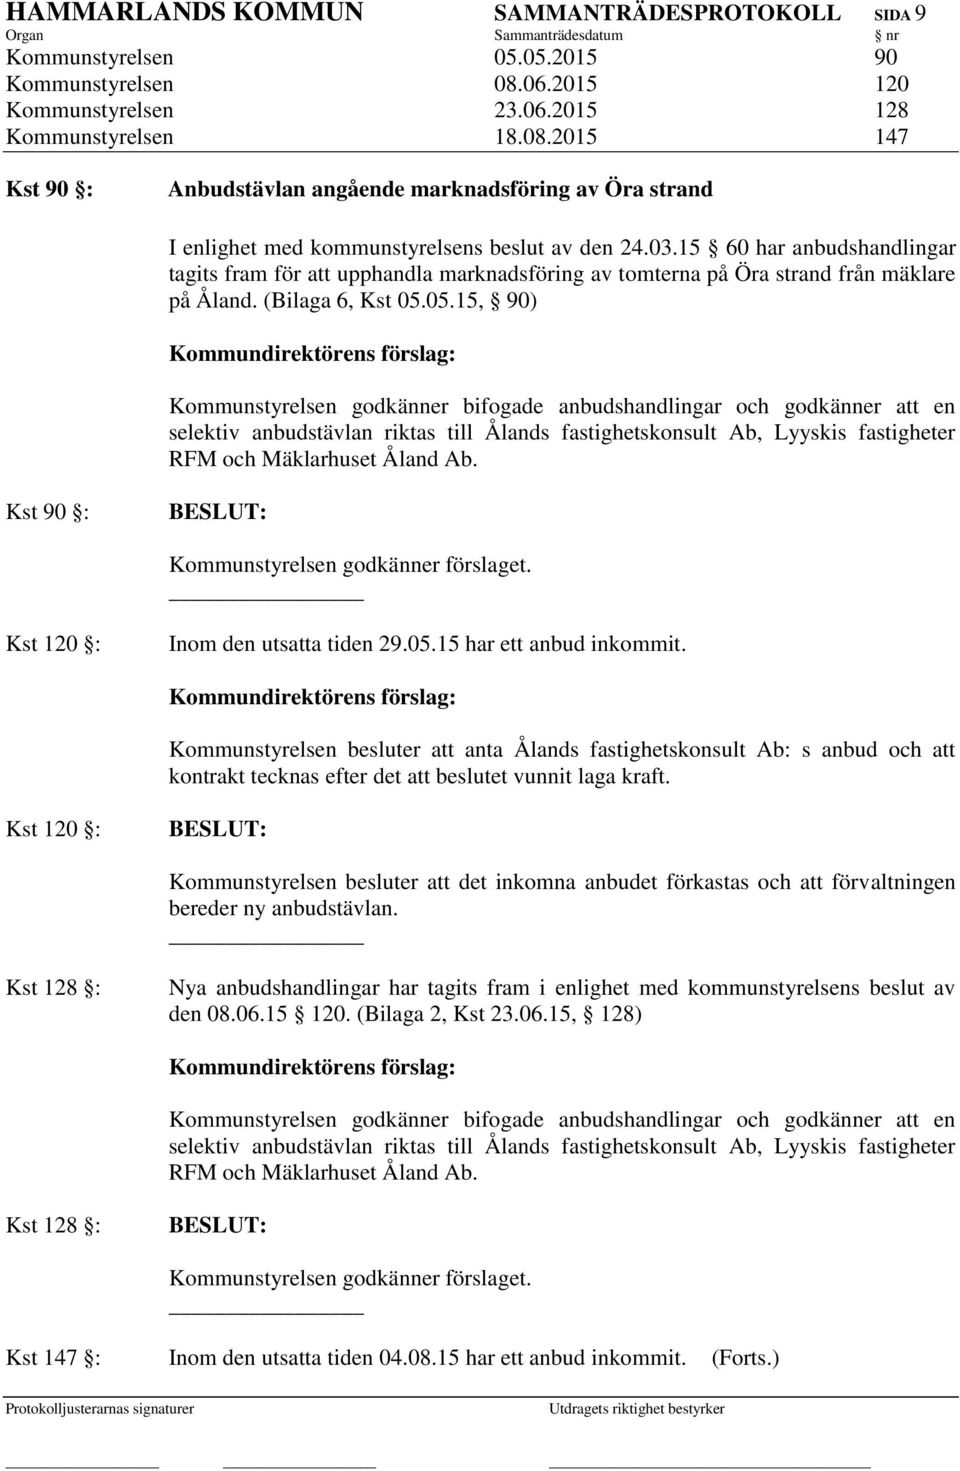 15 60 har anbudshandlingar tagits fram för att upphandla marknadsföring av tomterna på Öra strand från mäklare på Åland. (Bilaga 6, Kst 05.